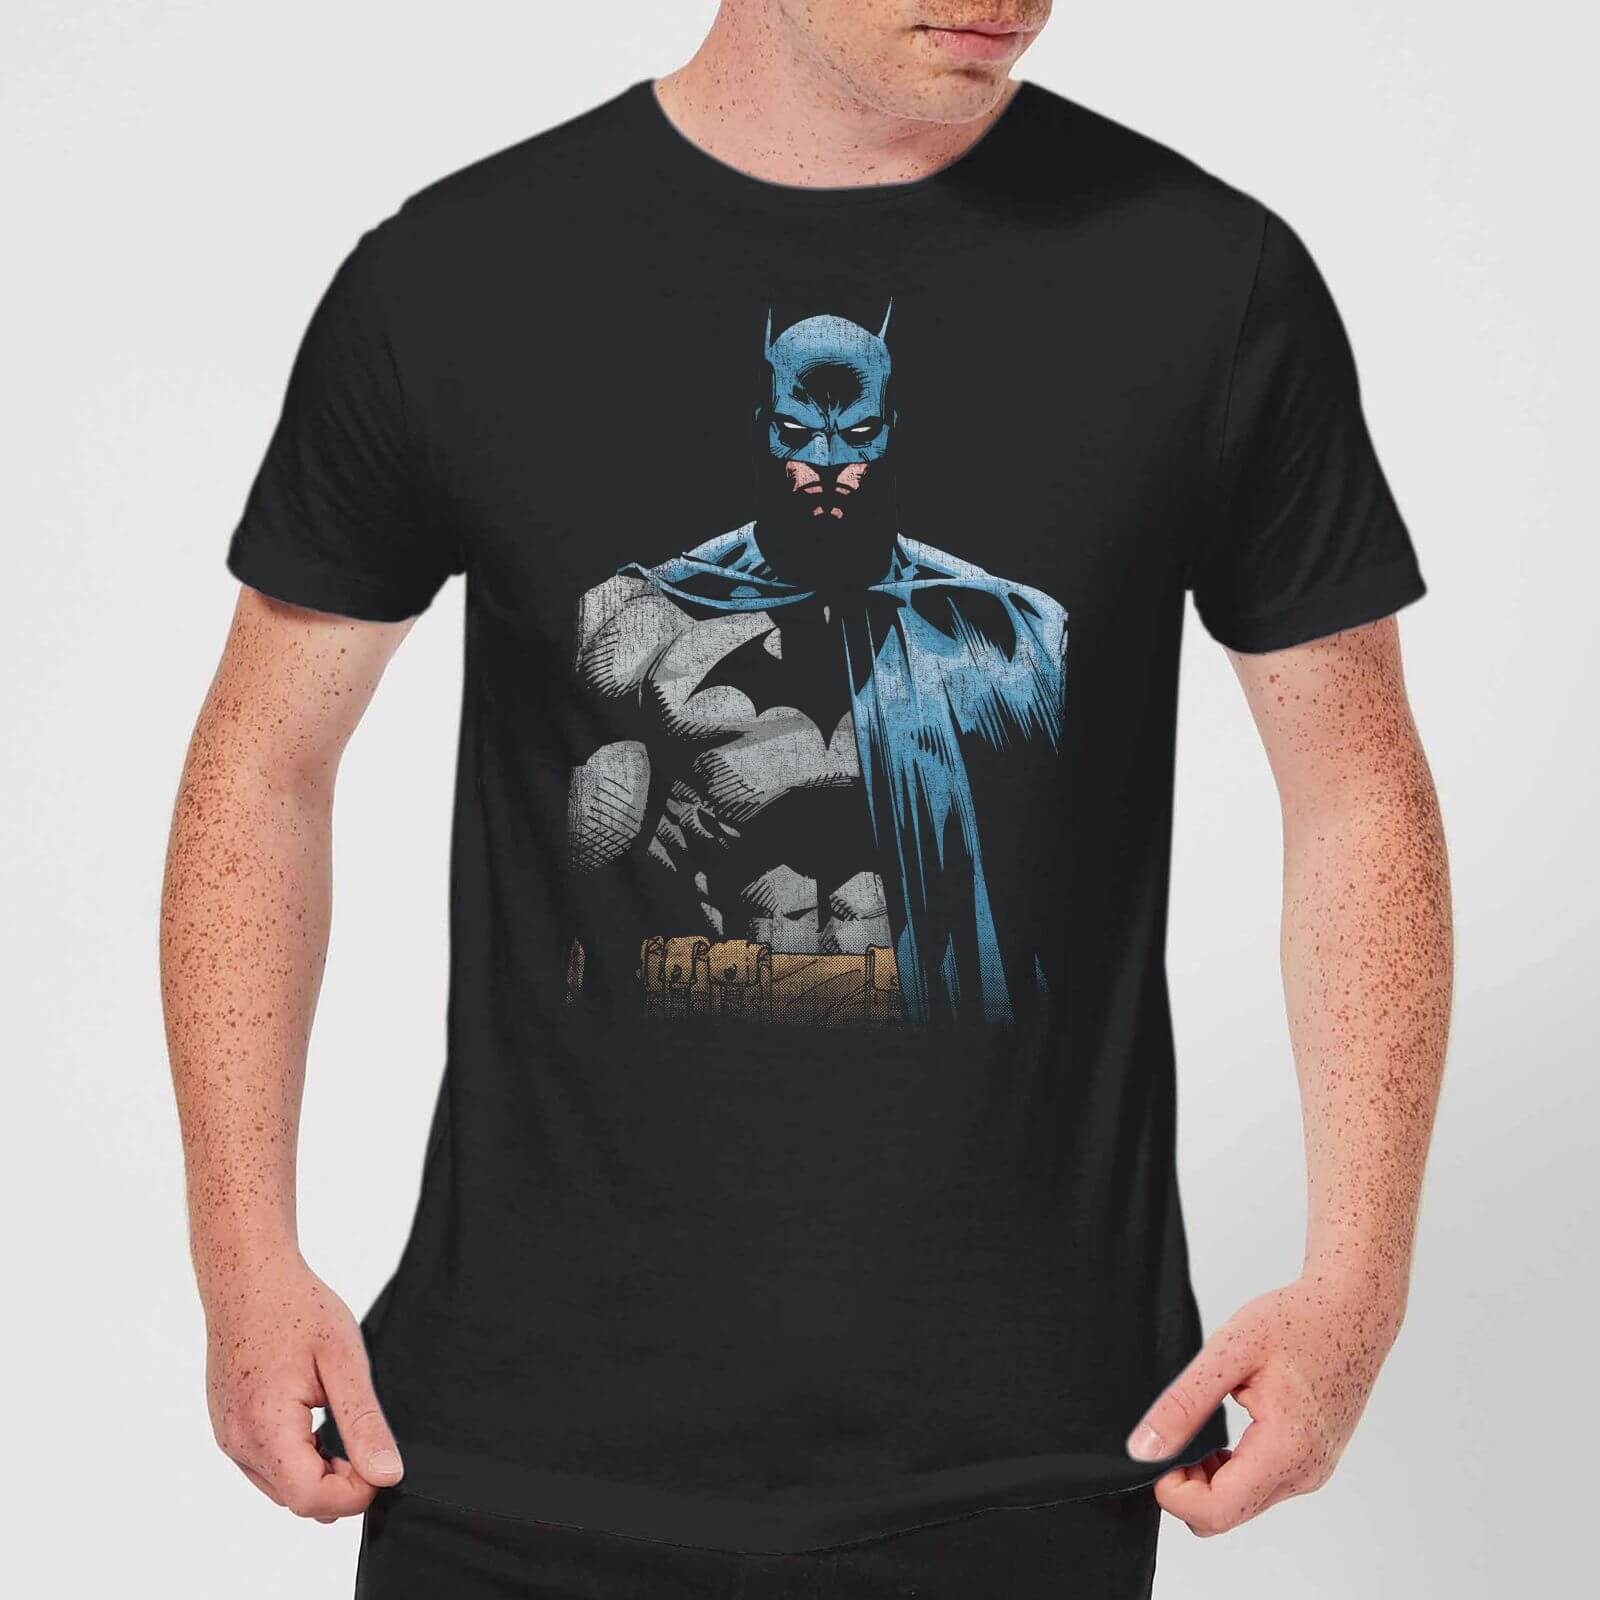 dc comics batman shirt